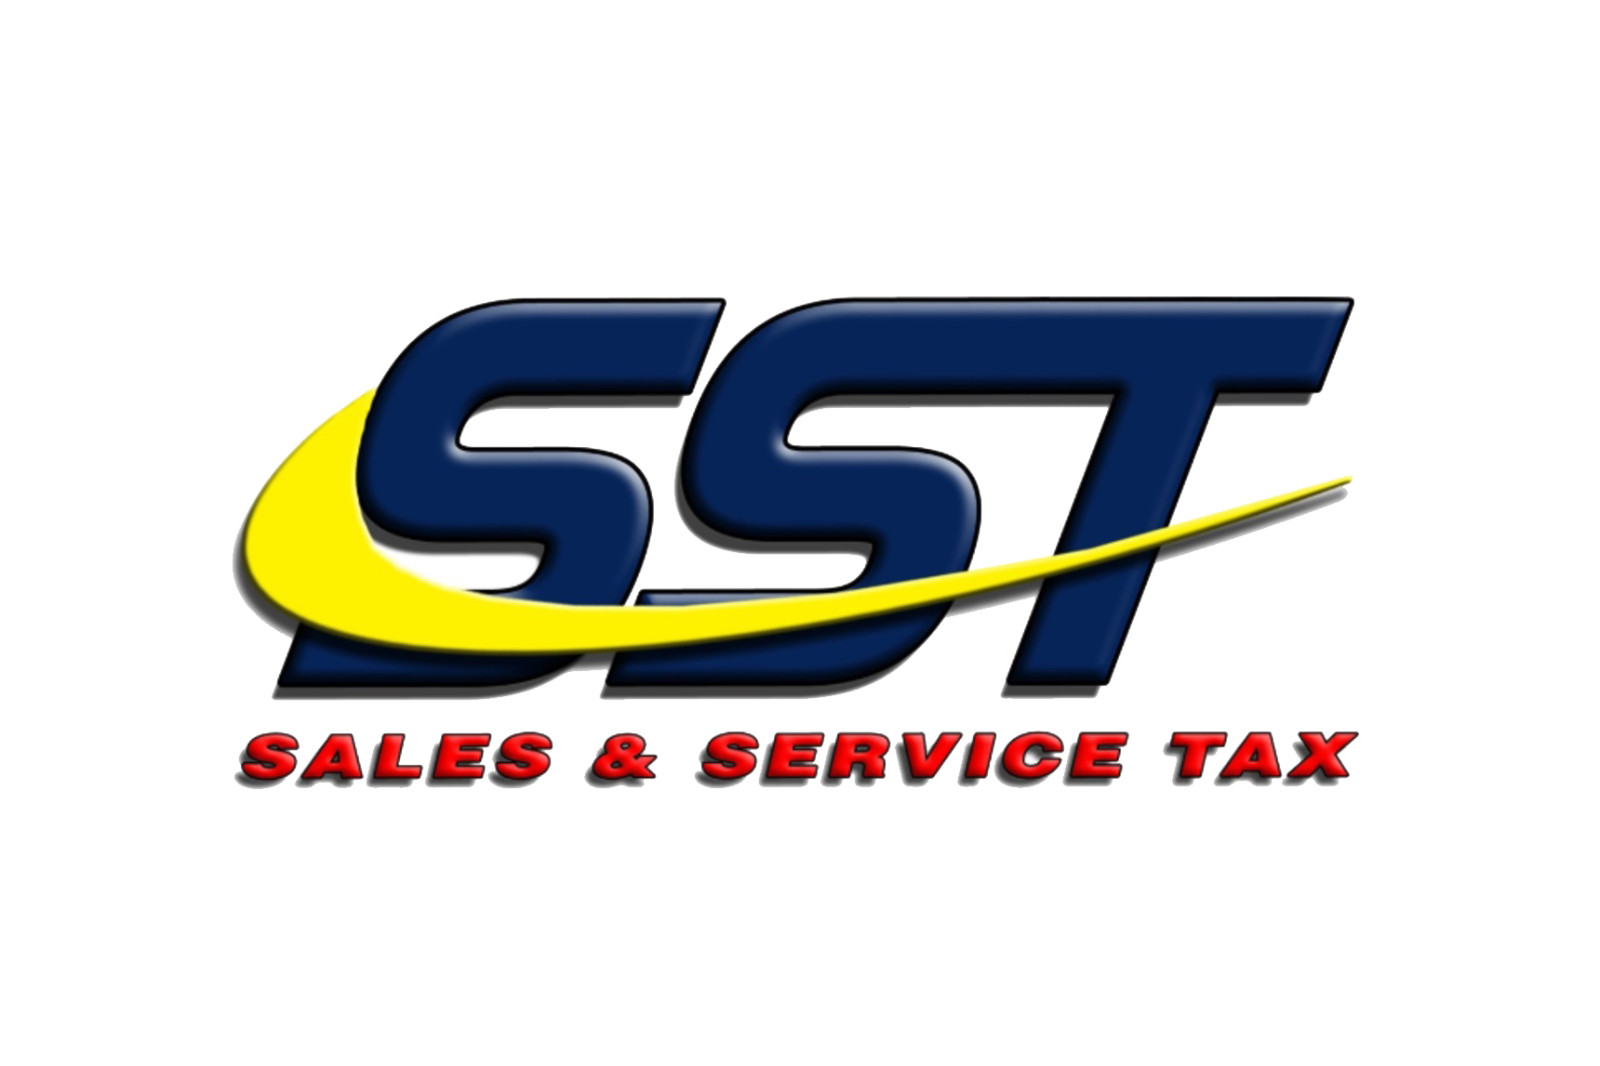 Sst letter logo design simple and modern Vector Image